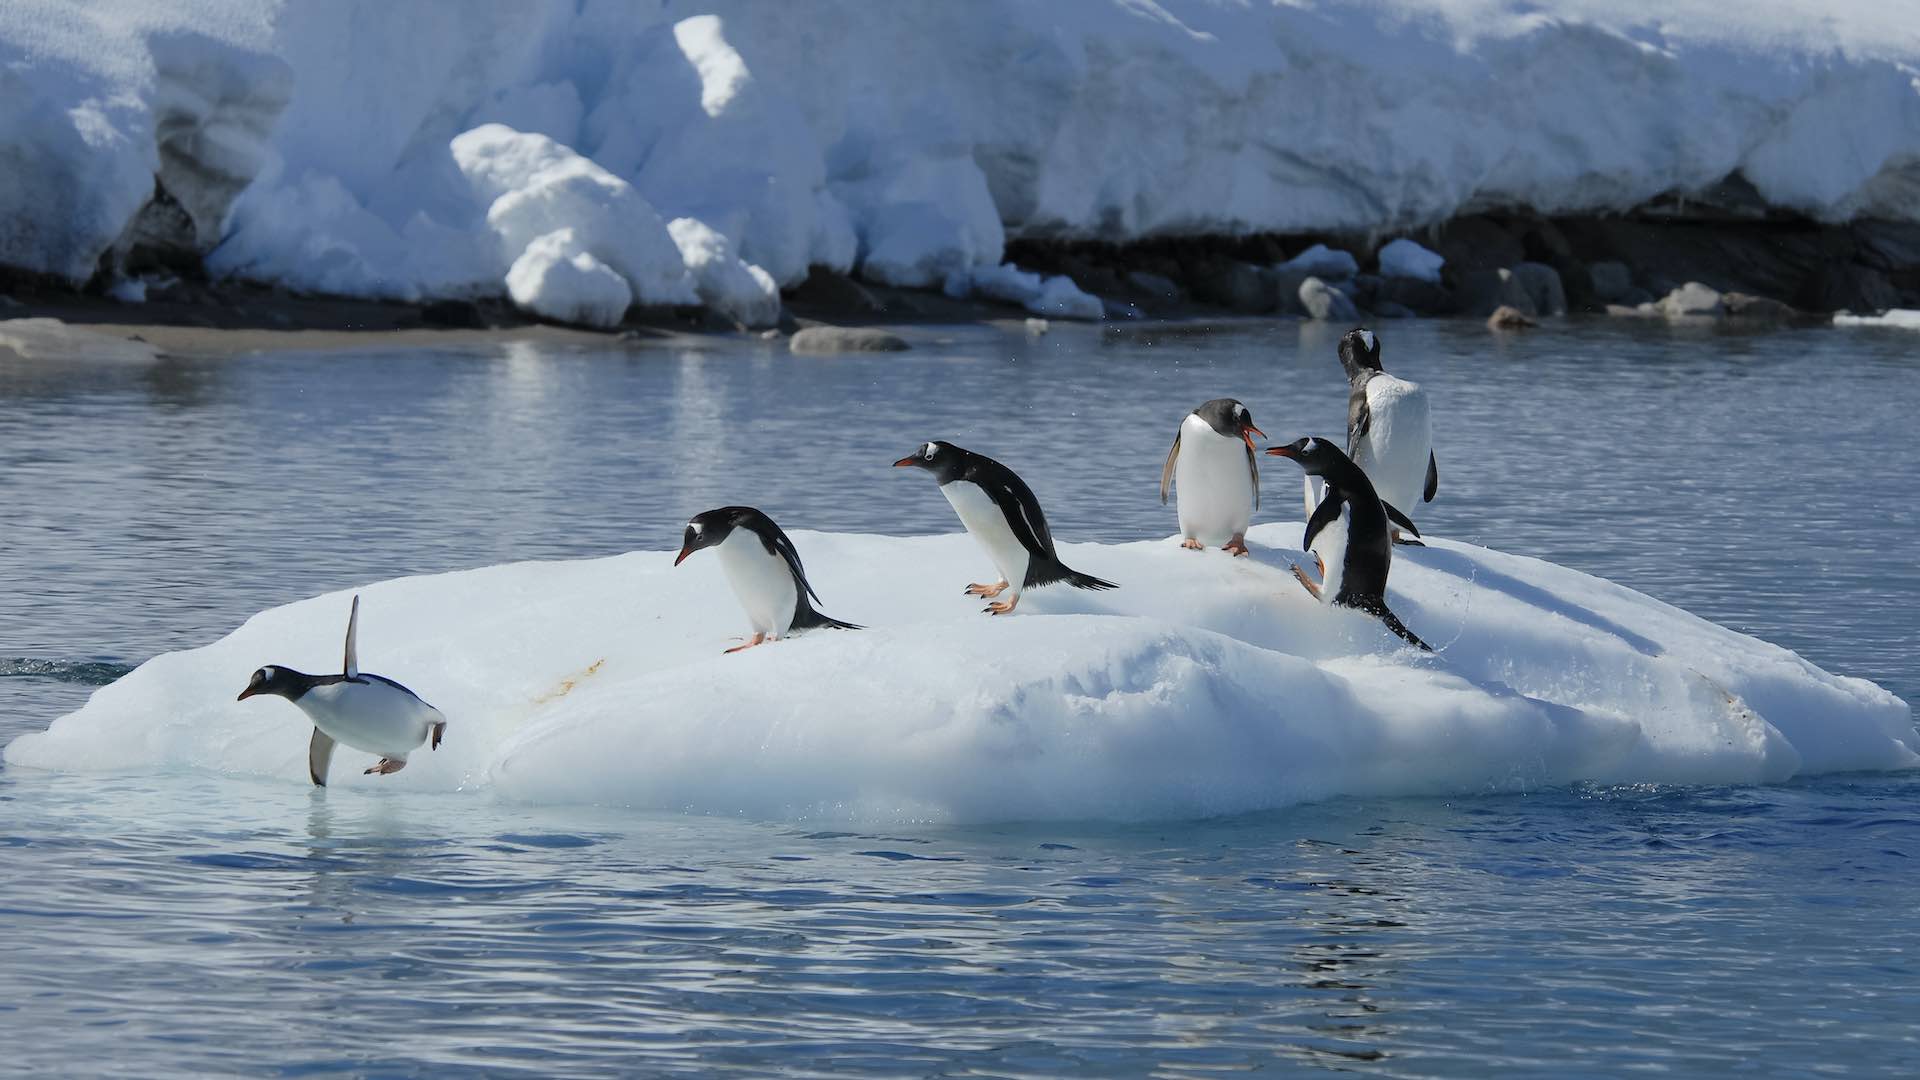 संयुक्त राष्ट्र महासचिव का कहना है कि अंटार्कटिका की पिघलती बर्फ जलवायु कार्रवाई की तात्कालिकता को उजागर करती है